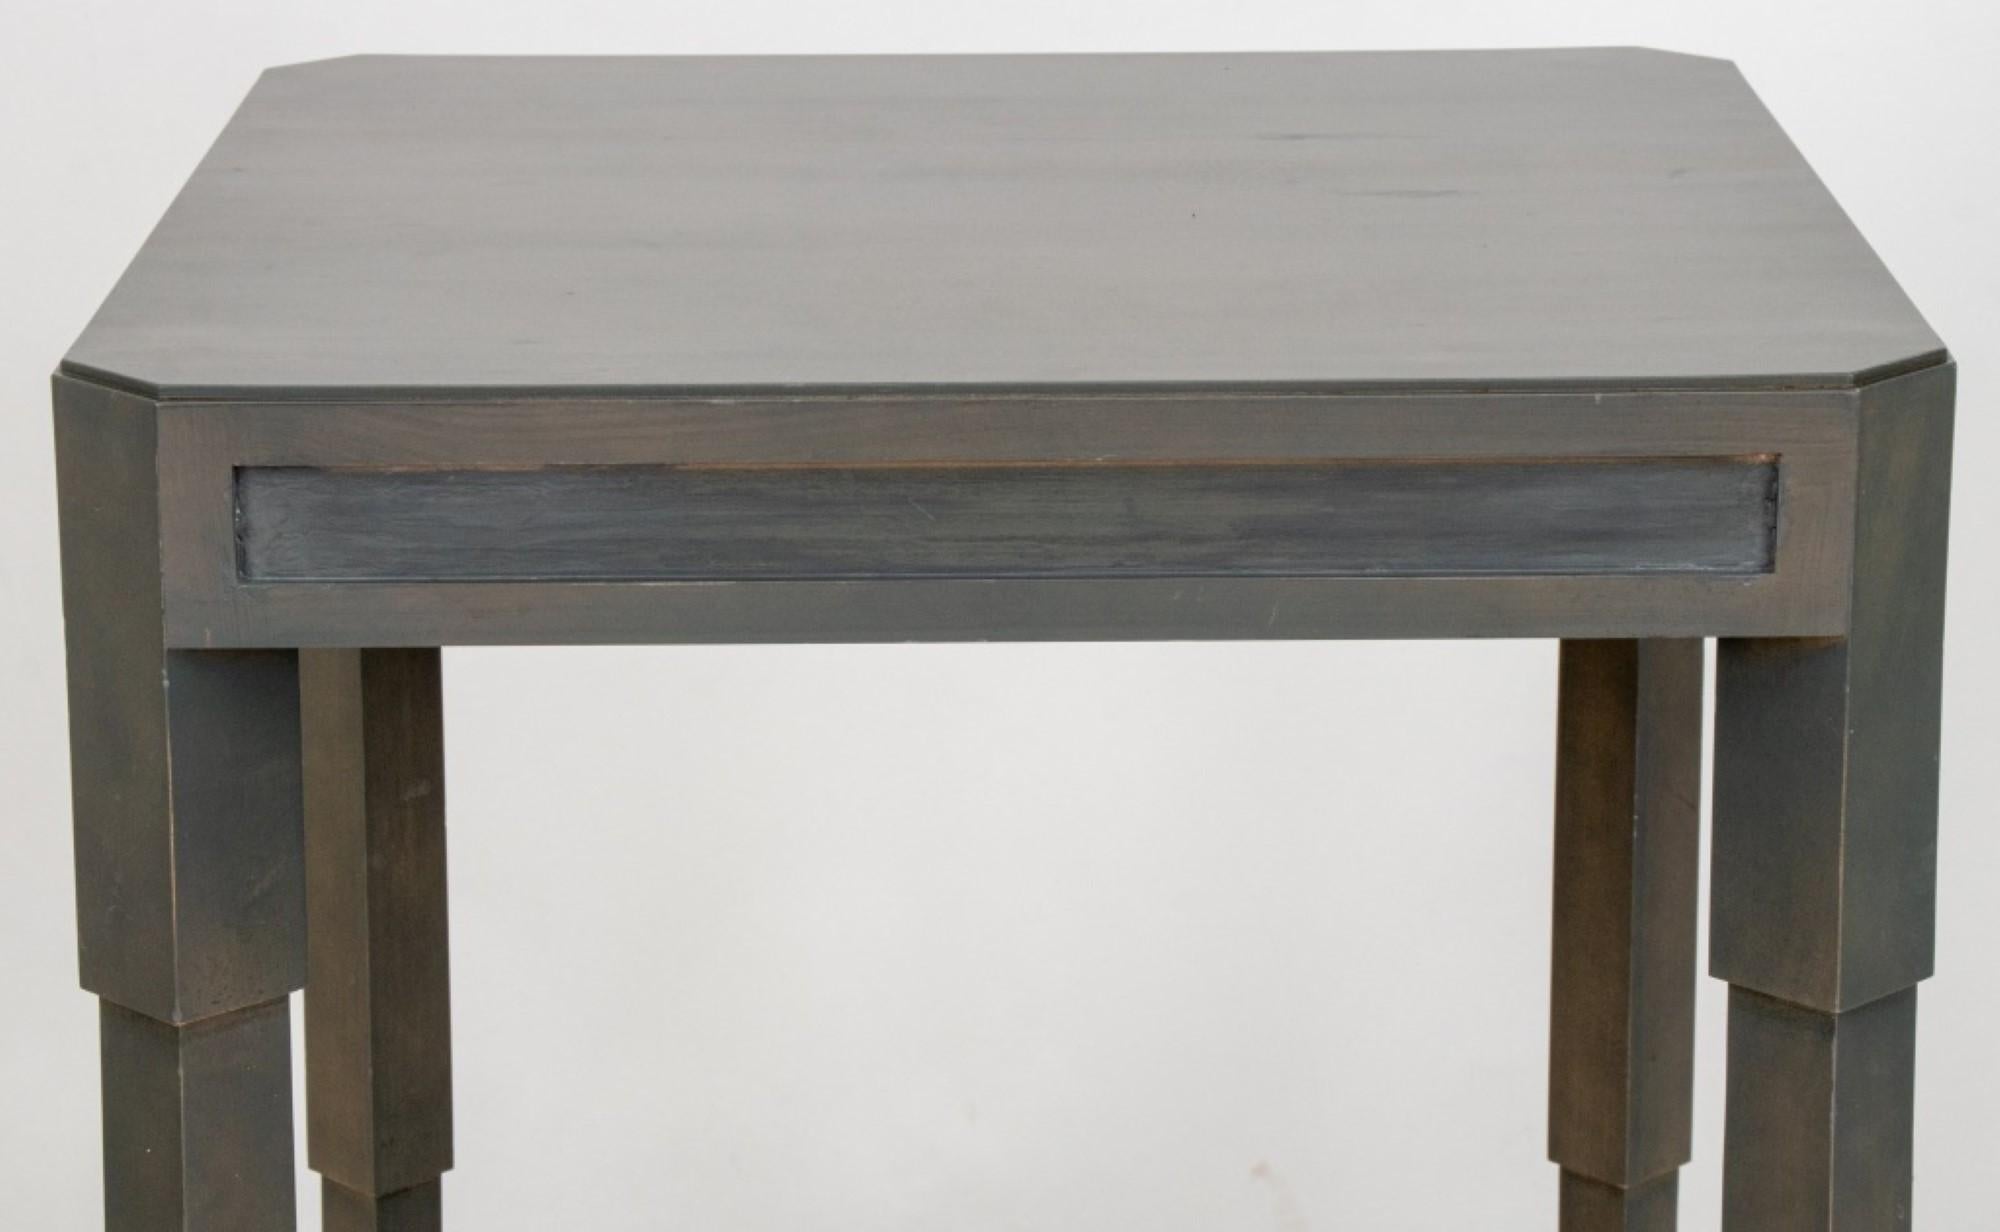 Moderner, grau lackierter Tisch im Art-Déco-Stil.

Händler: S138XX